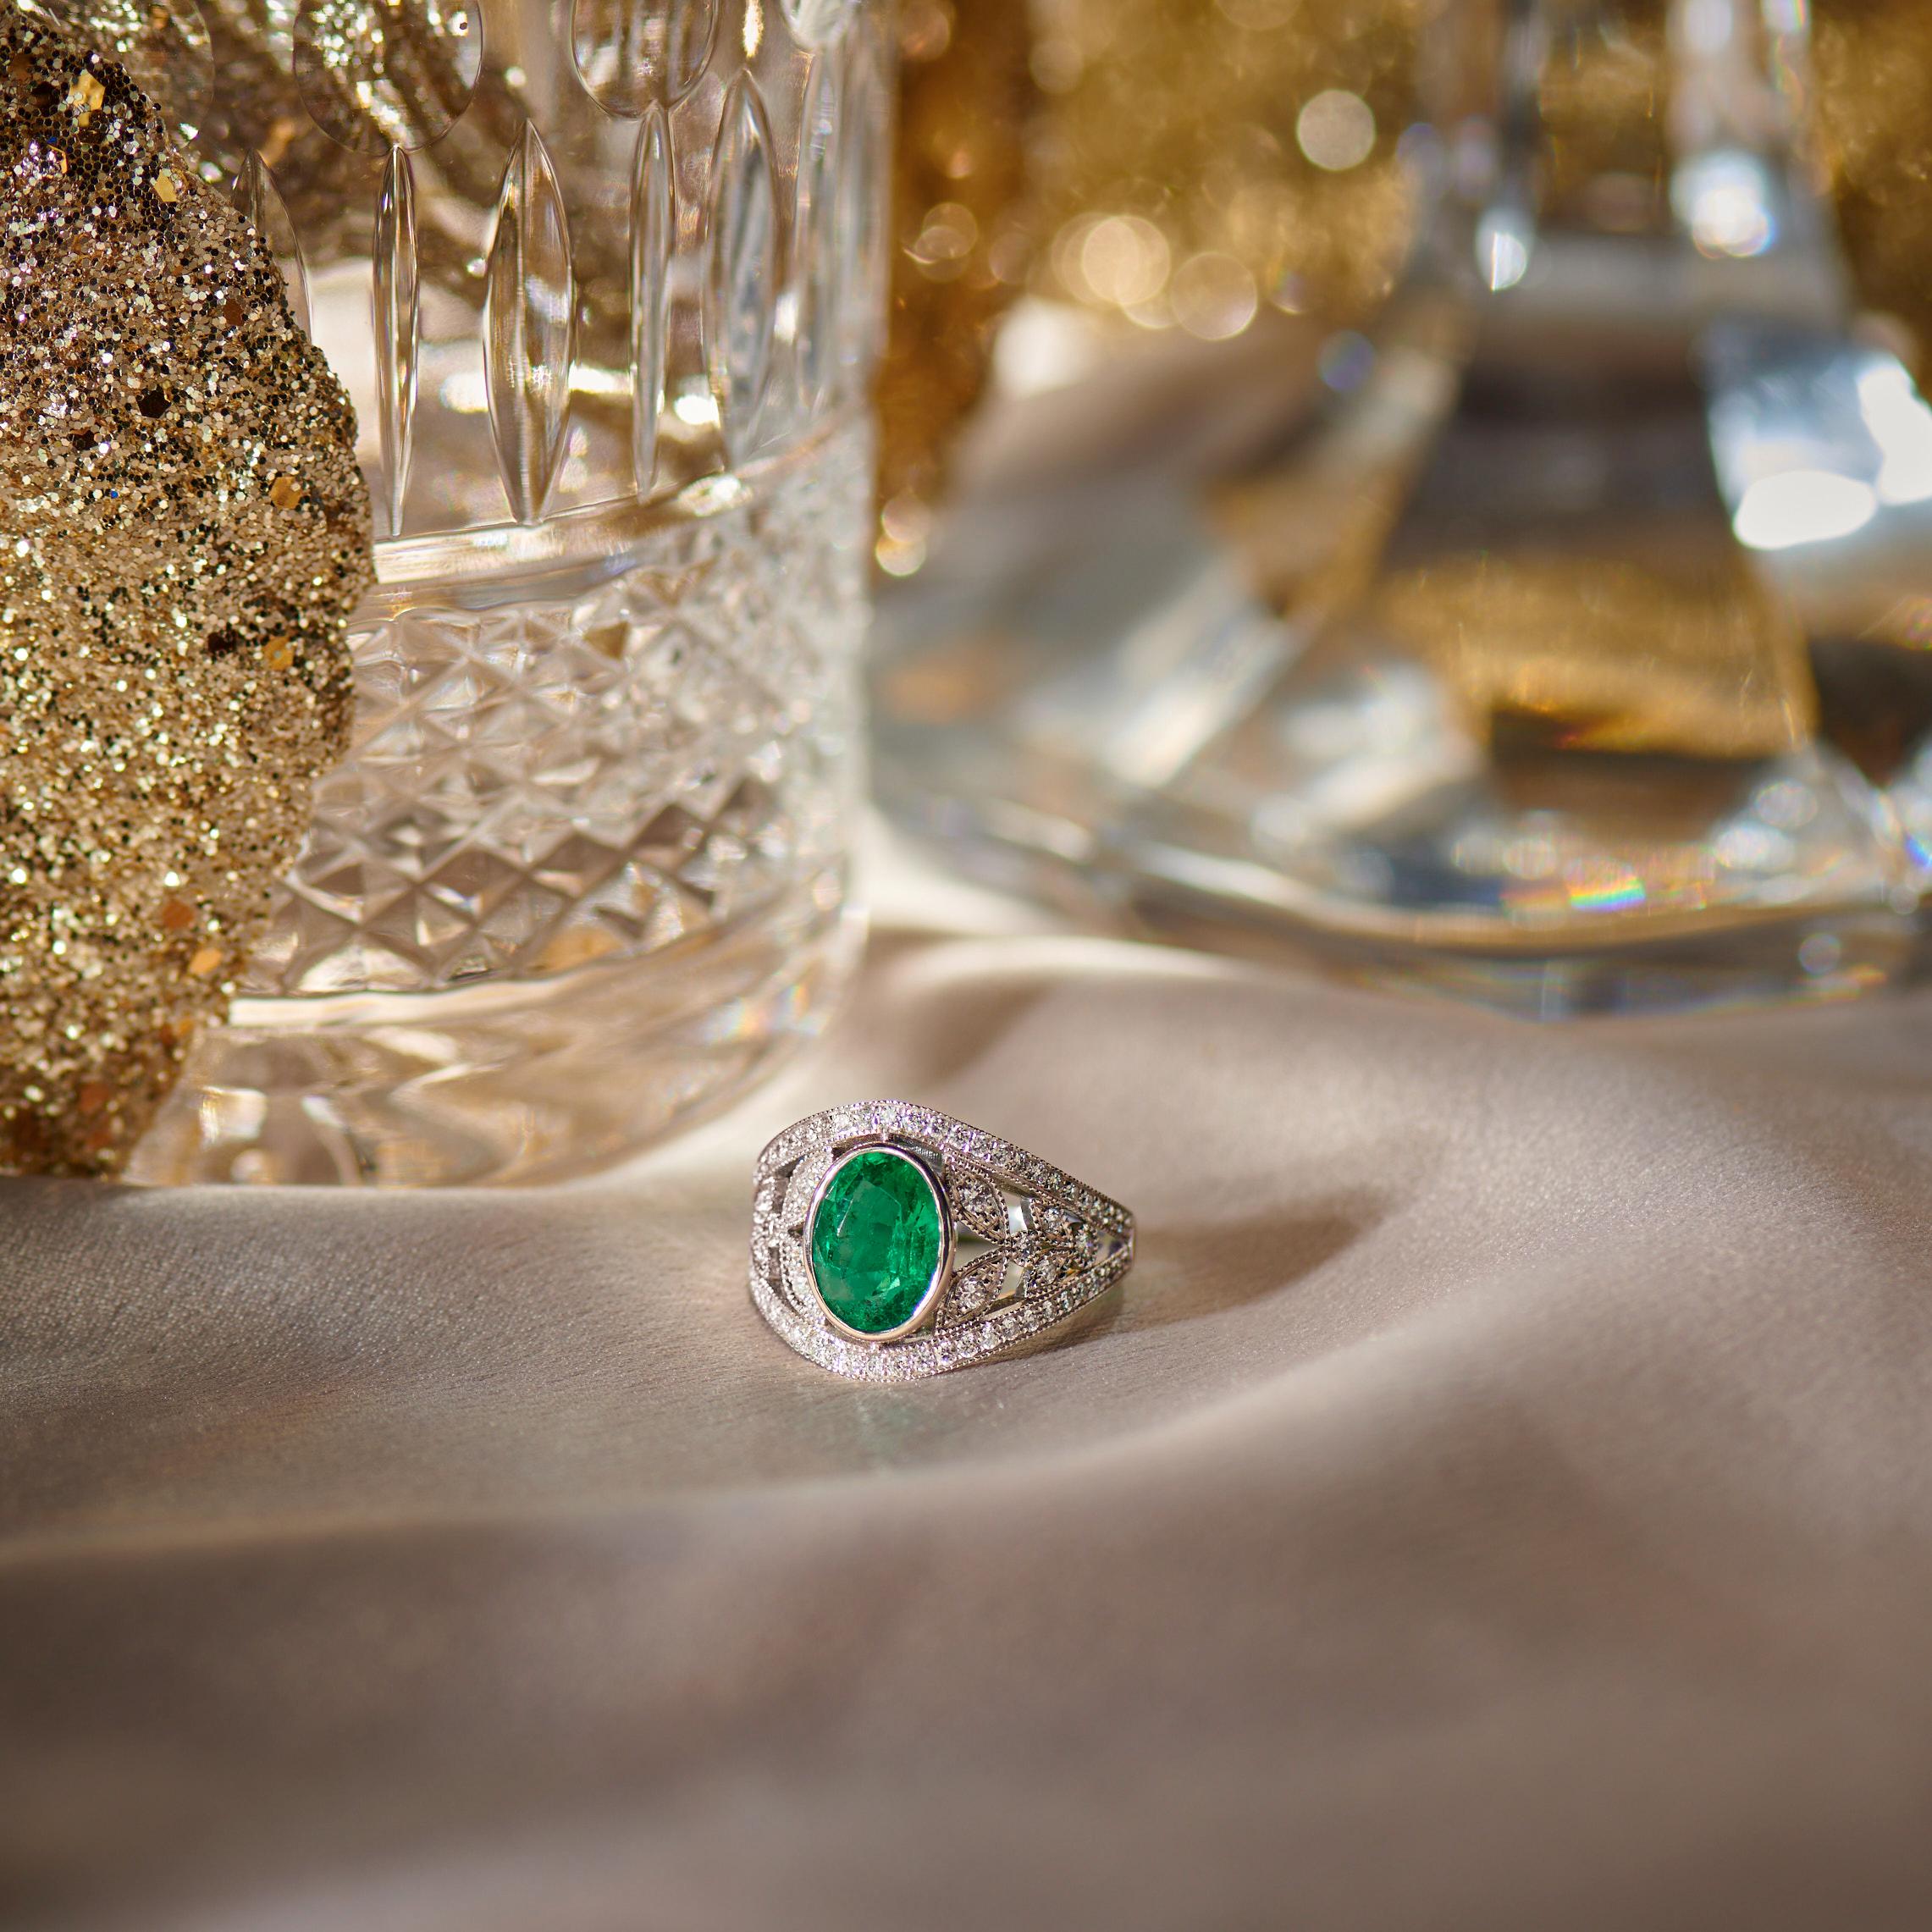 For Sale:  18k White Gold Laurel Leaf Design 1.28 Ct Vivid Green Oval Emerald Ring 6